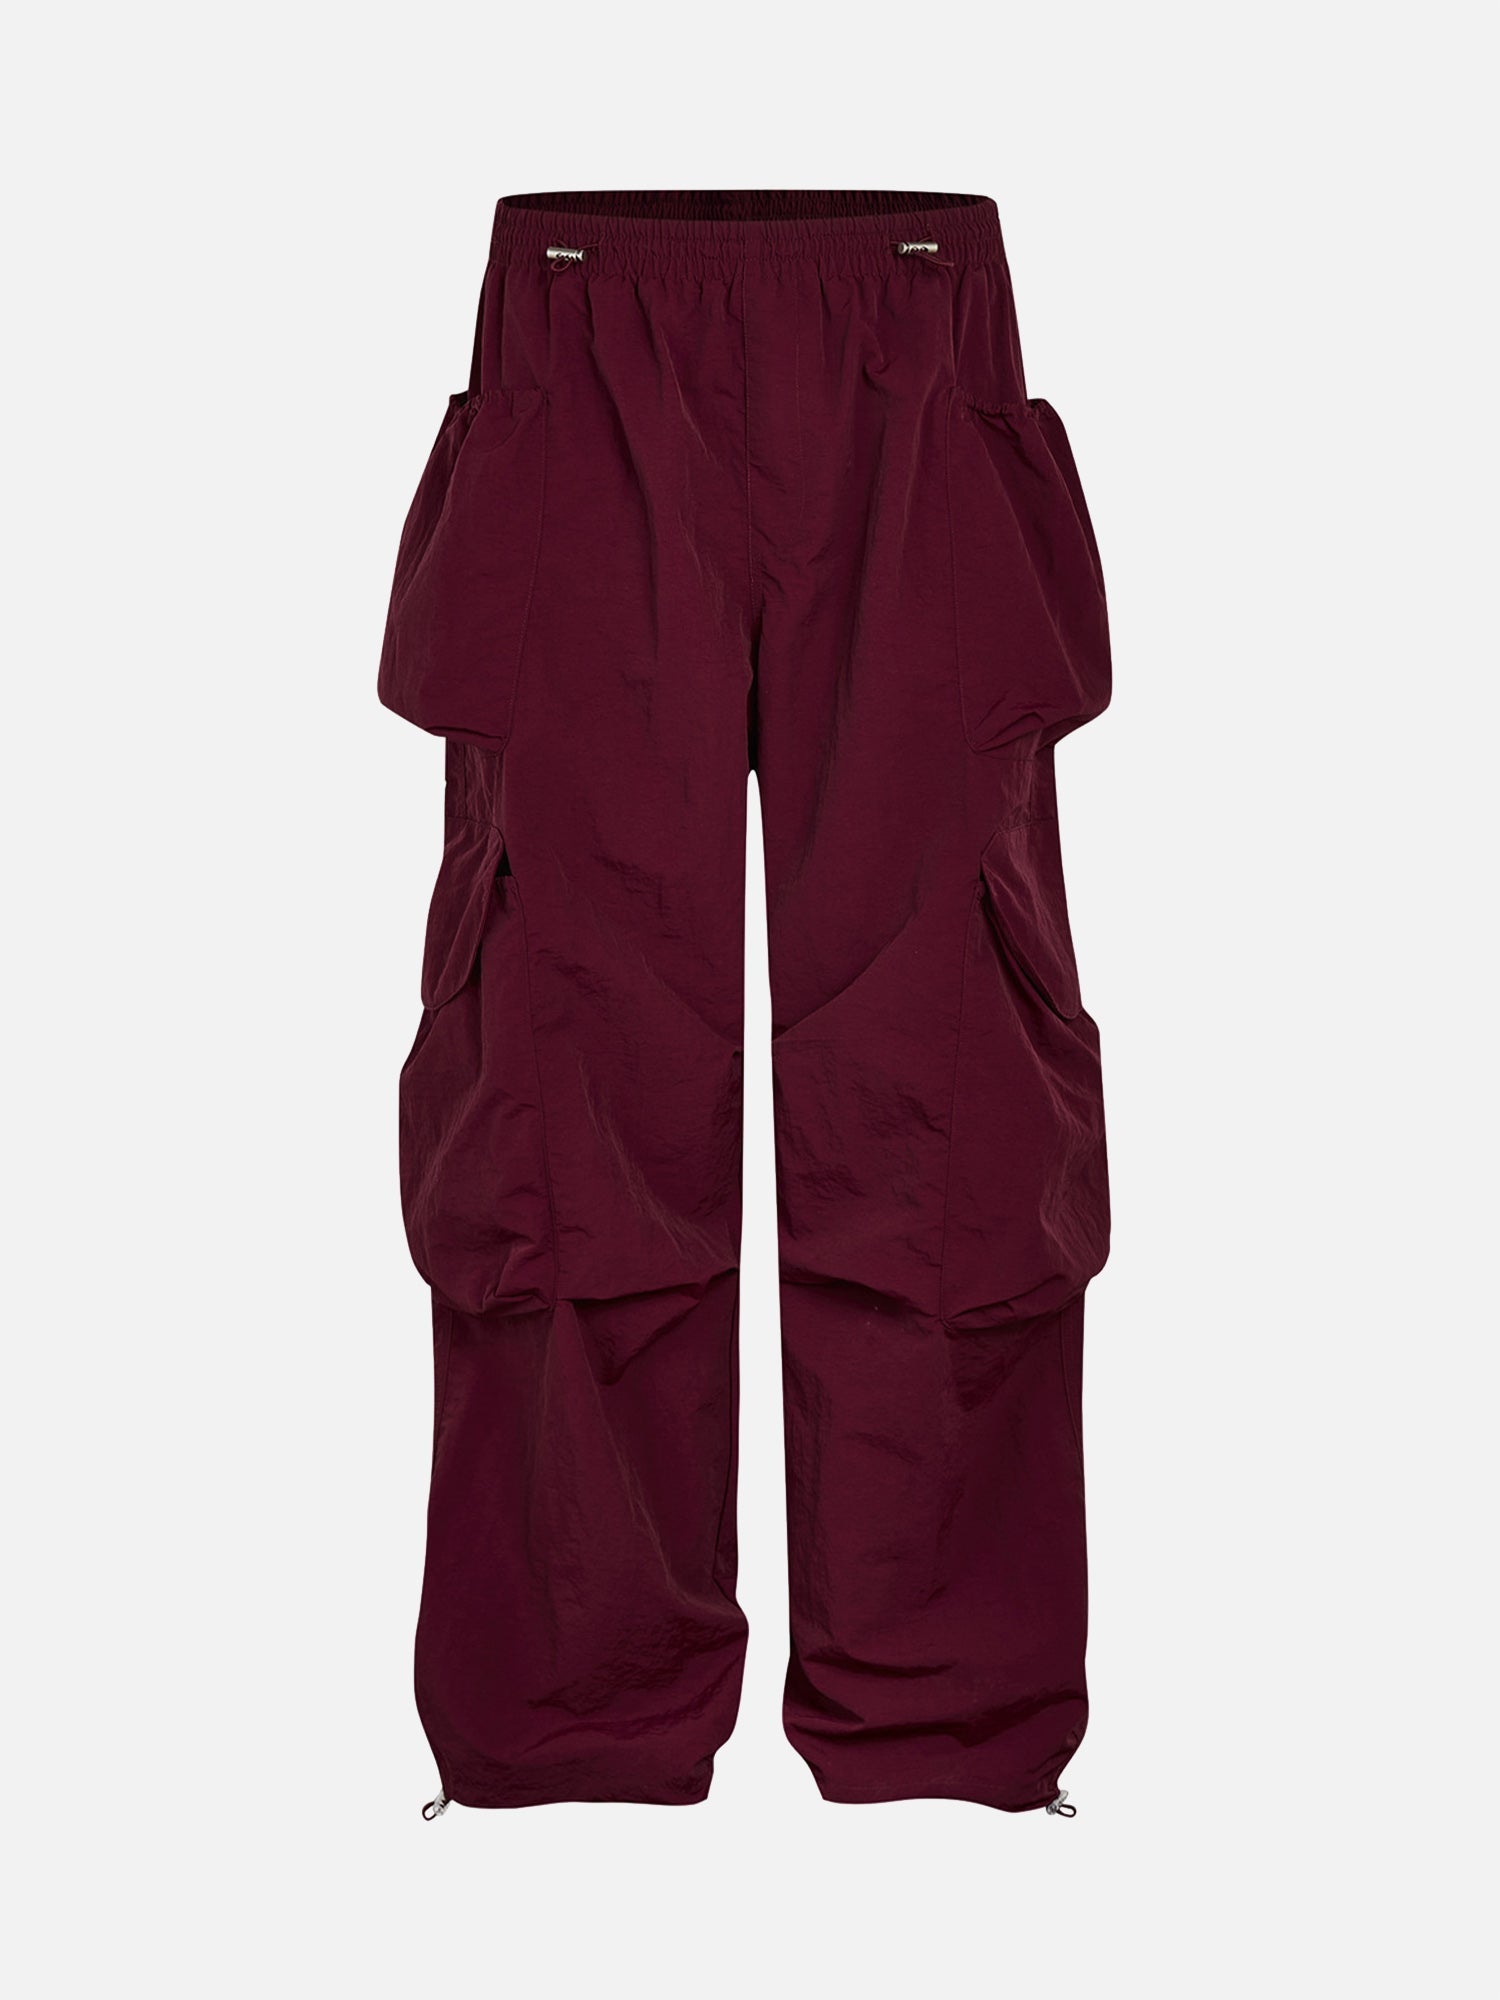 American Retro Street Waterproof Multi-pocket Casual Pants